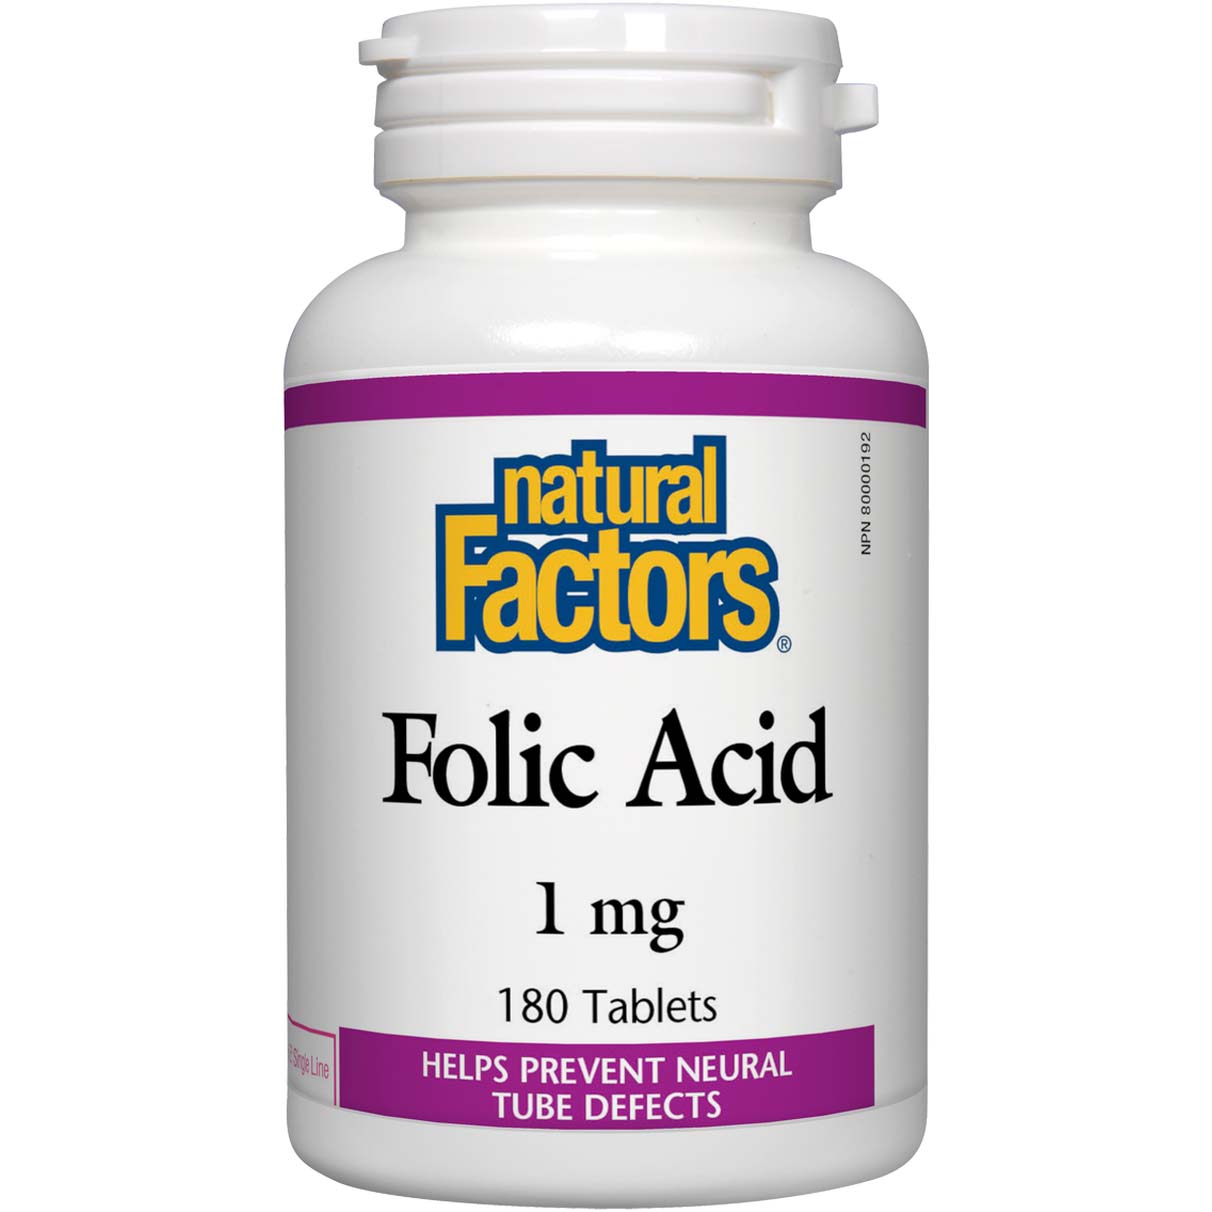 Natural Factors Folic Acid, 1 mg, 180 Tablets